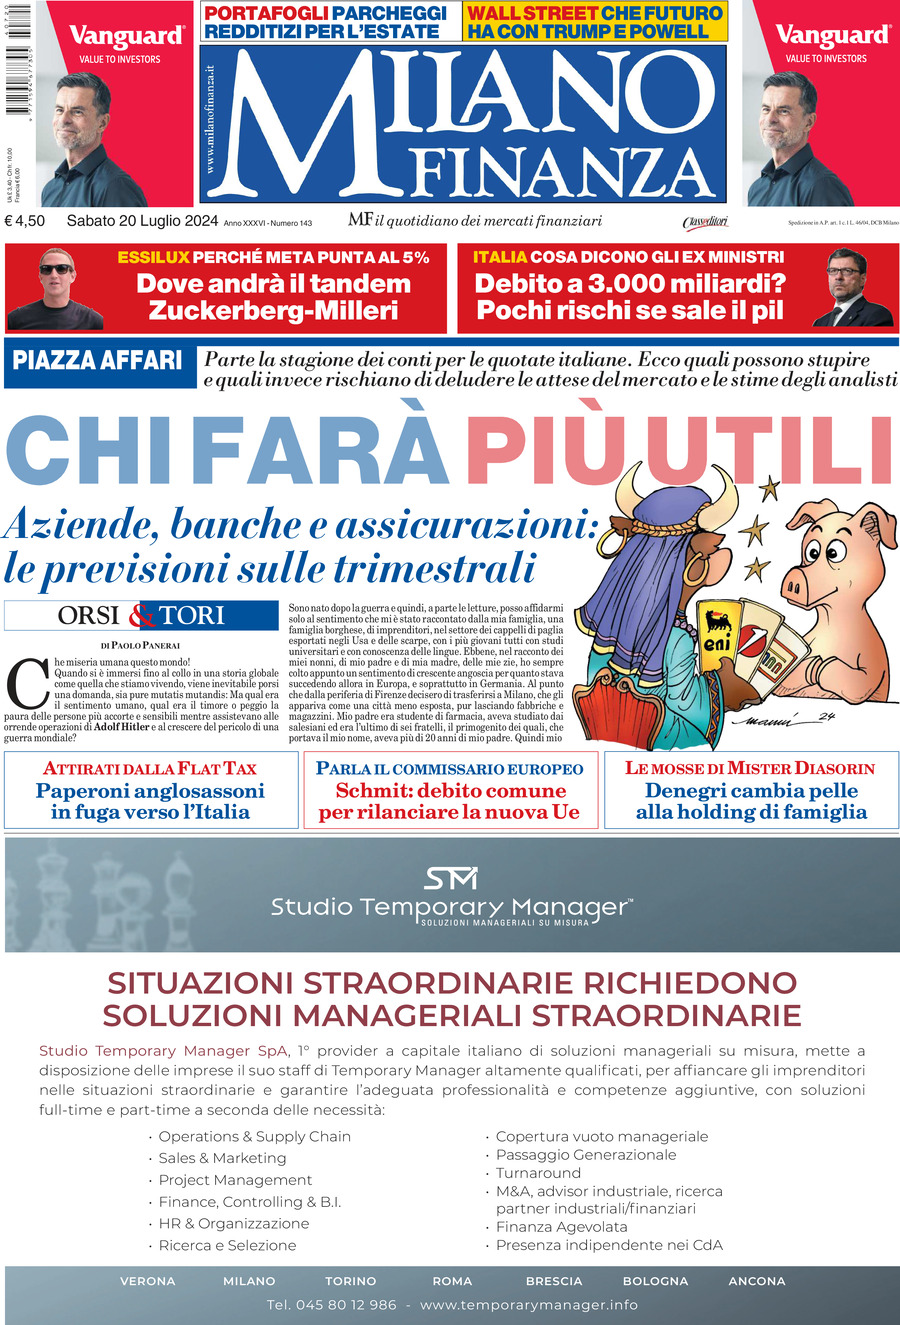 MF Milano Finanza, prima pagina